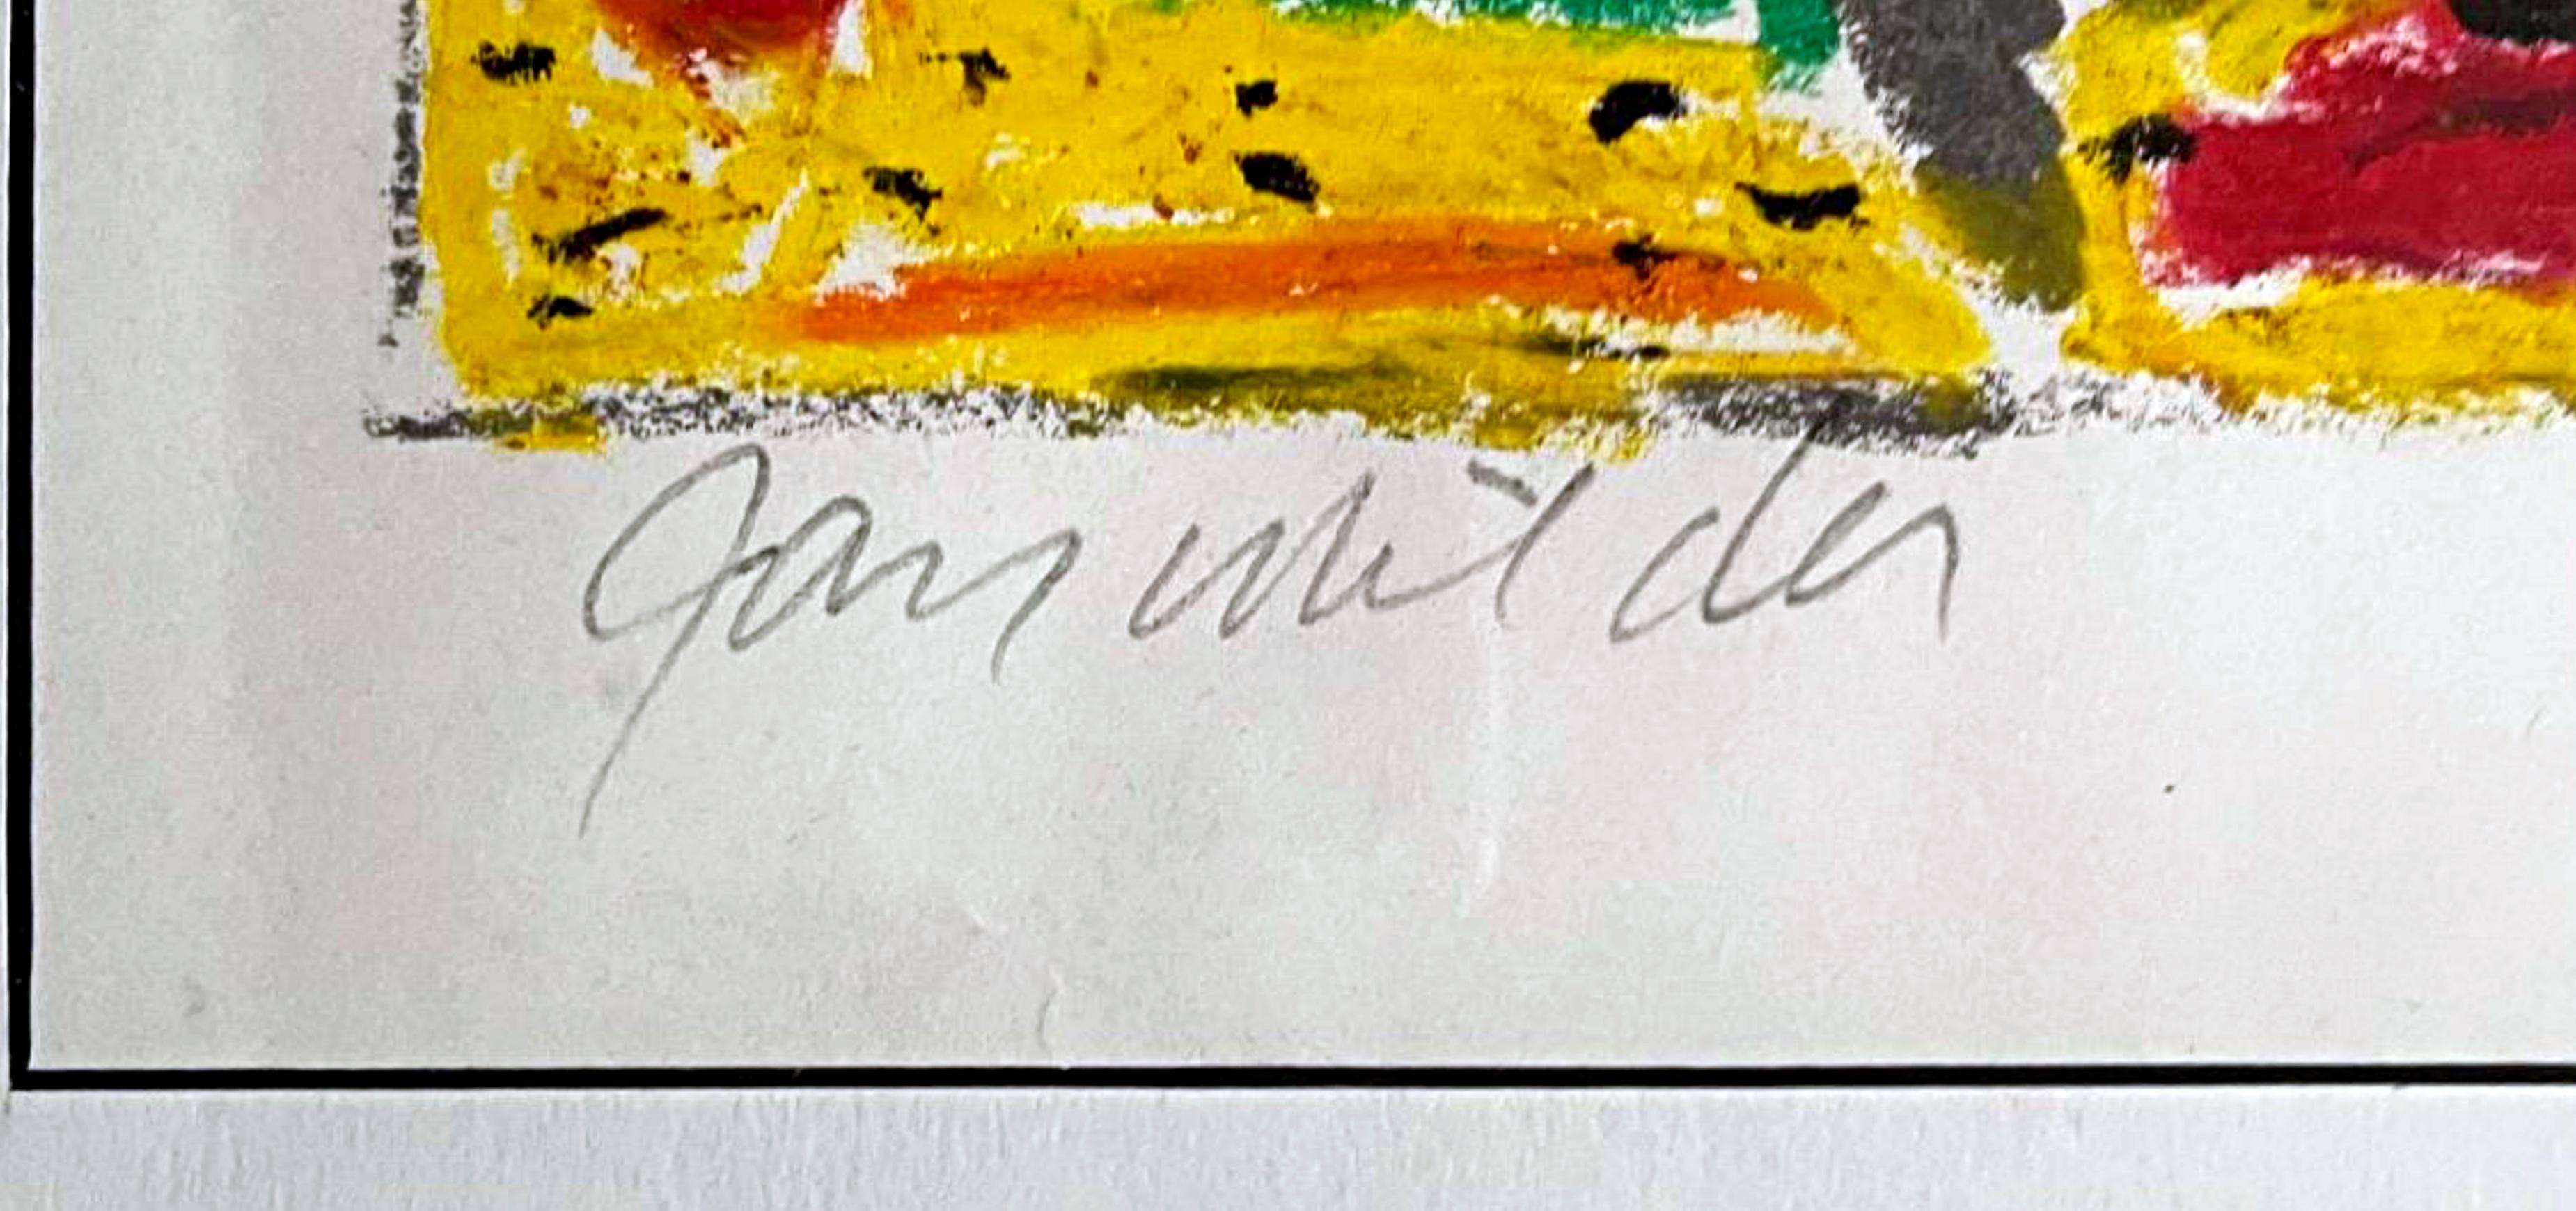 JAY MILDER 
Ohne Titel, ca. 1987
Gouache auf Papier
handschriftlich mit Bleistift signiert, unten links. 
Das Bild ist 9 Quadratzoll groß, gerahmt sind es 16 Quadratzoll.
Inklusive Rahmen:
gehalten im originalen Vintage-Rahmen
Als Schützling von